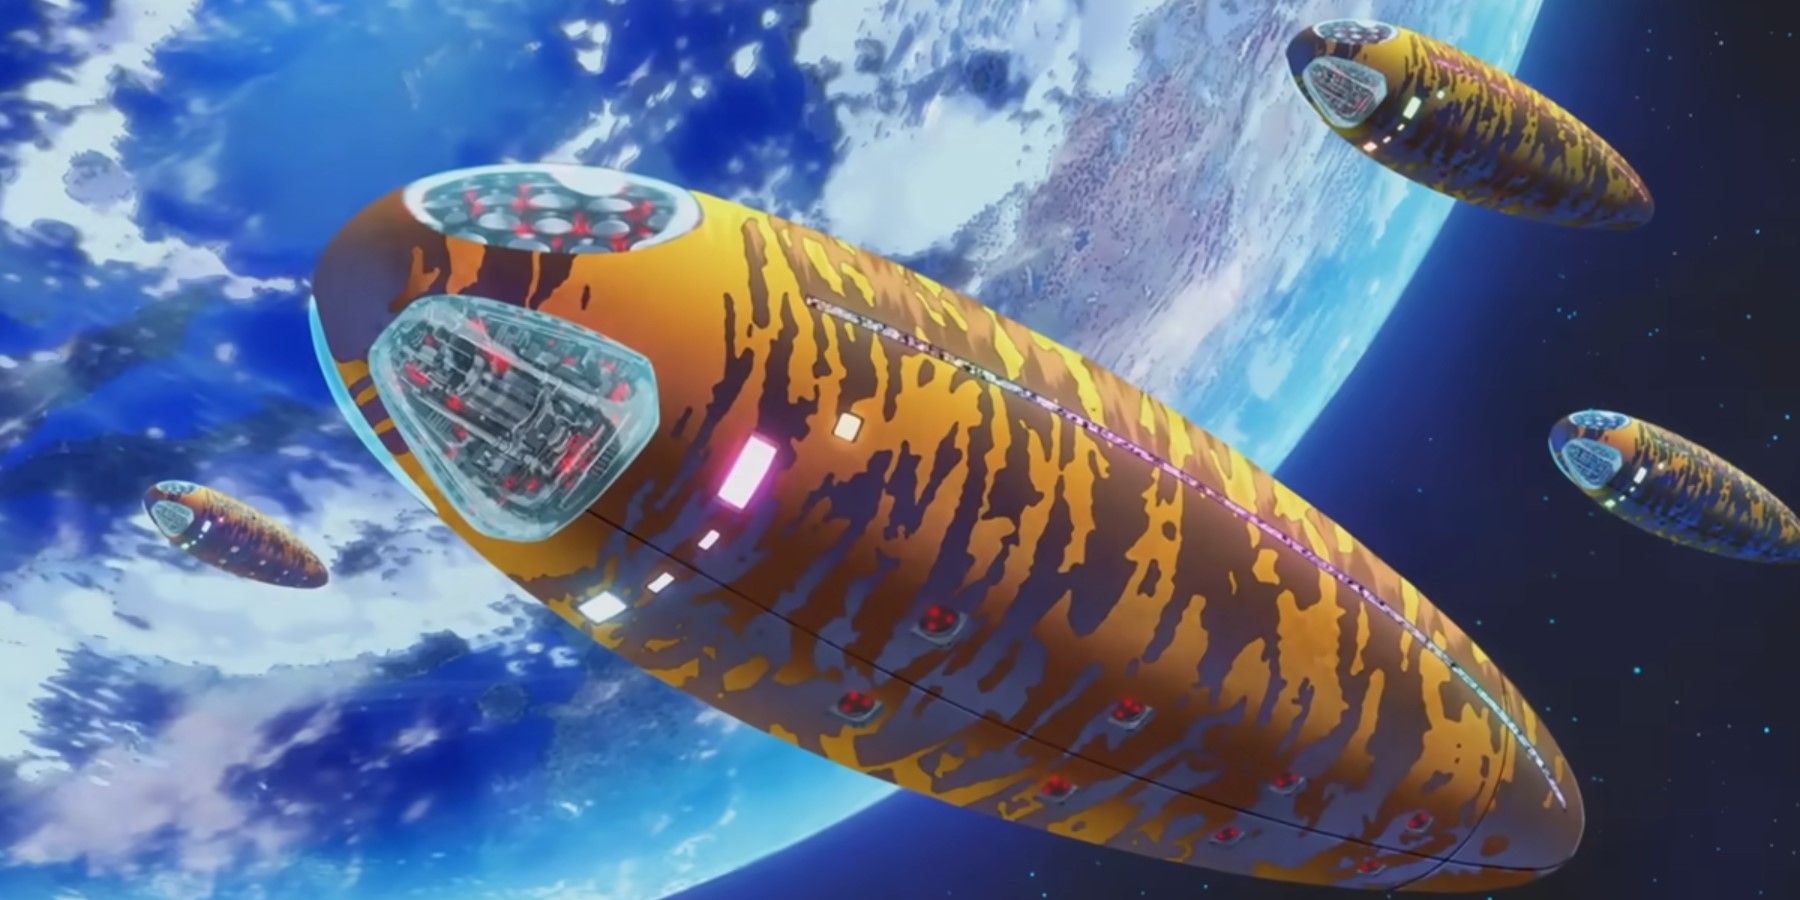 Urusei Yatsura Spaceships flying over earth